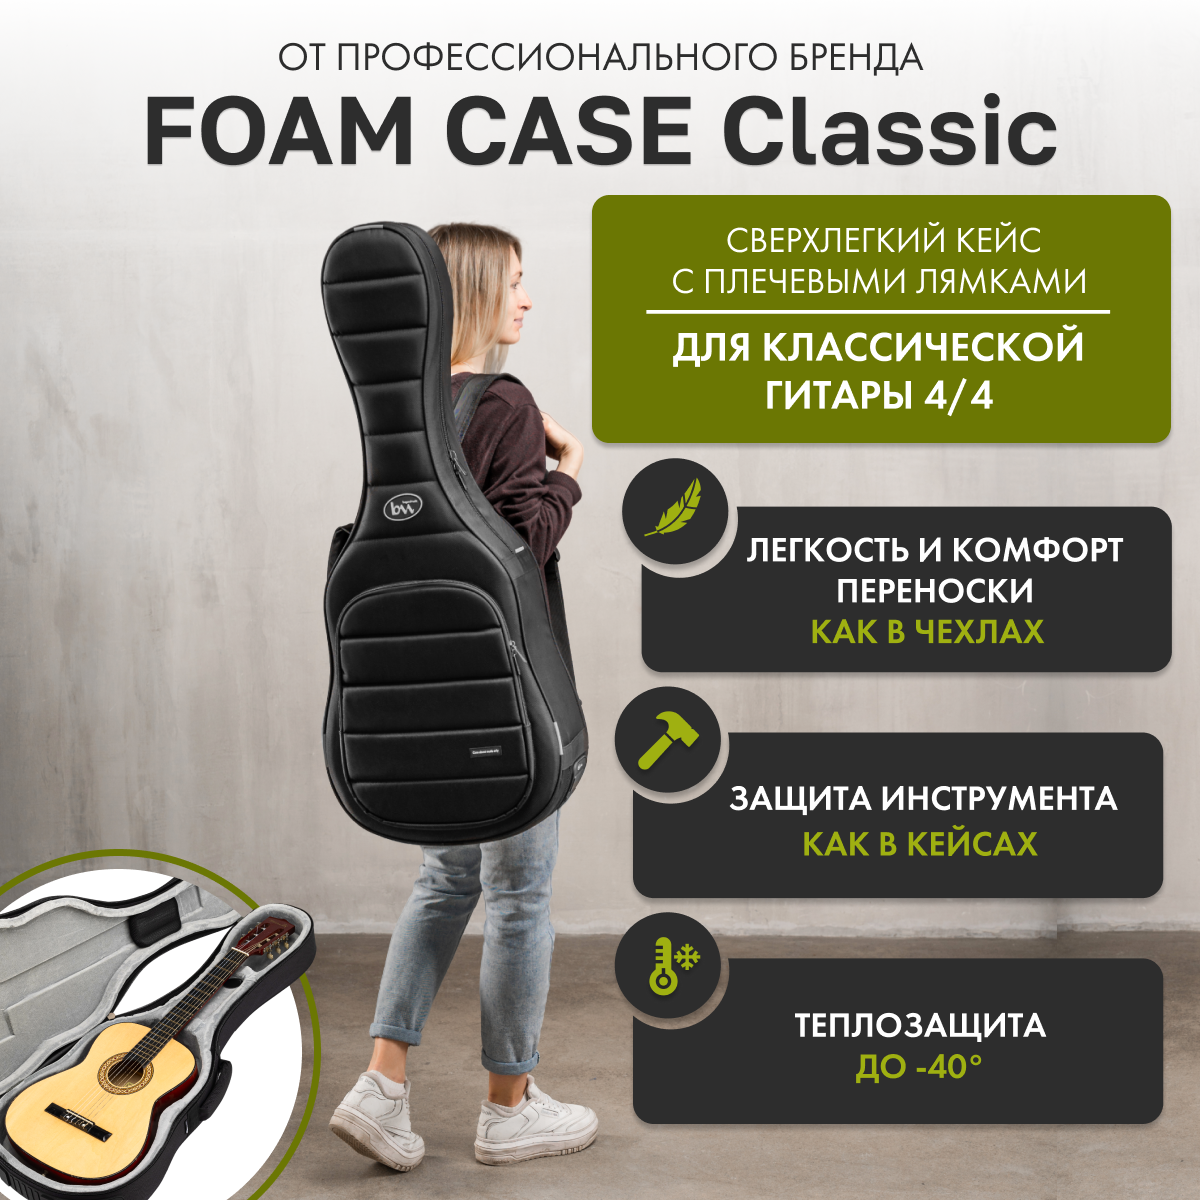 Сверхлёгкий кейс для классической гитары Classic Foam Case